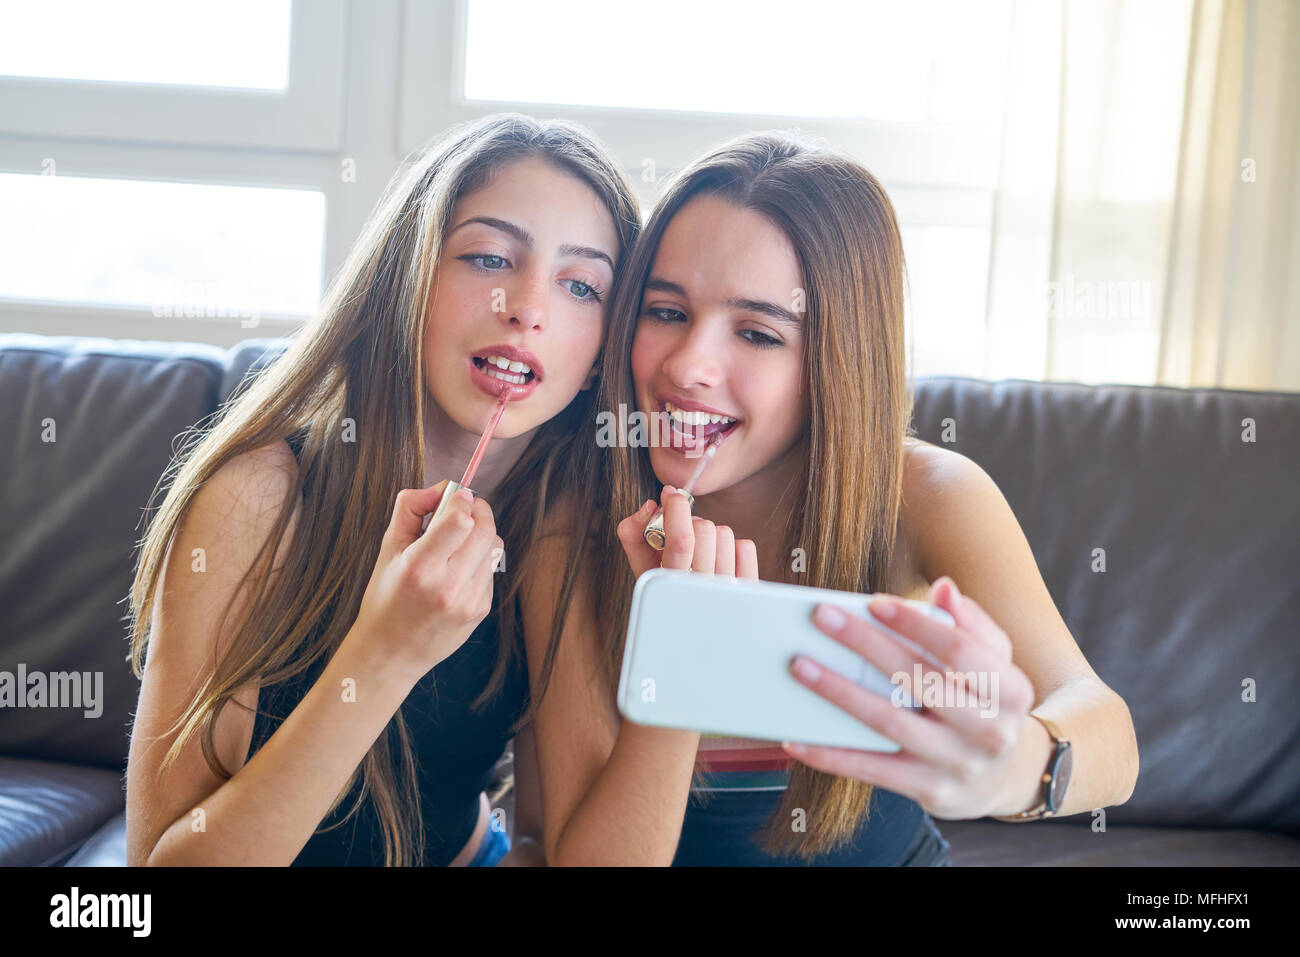 Adolescente ragazze migliori amici trucco selfie fotocamera dello smartphone in make-up Foto Stock